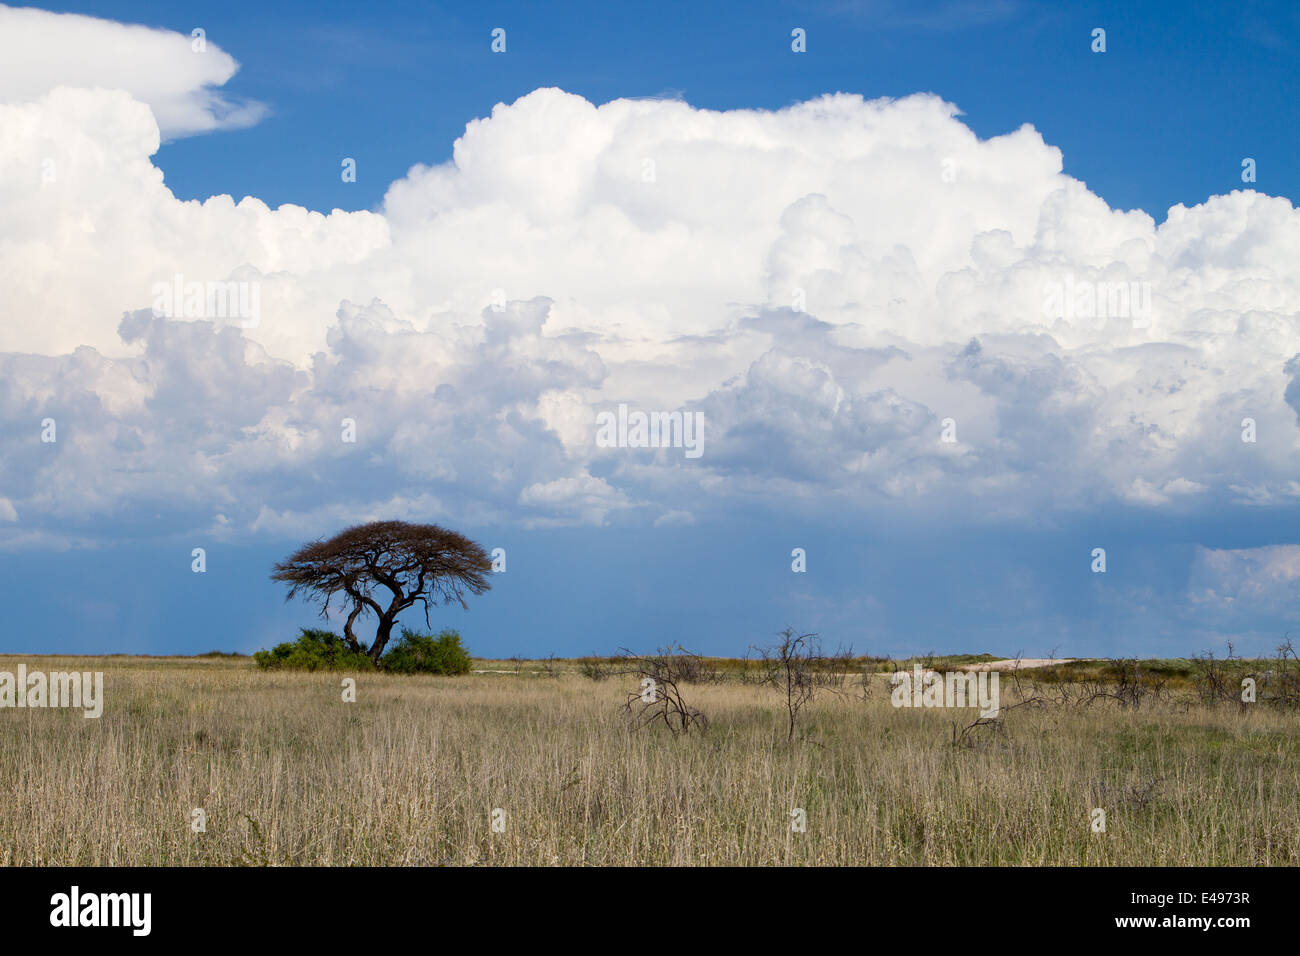 Eine Landschaft mit einem Dornenbaum im Vordergrund und Regen Sturm - große weiße Wolken Stockfoto